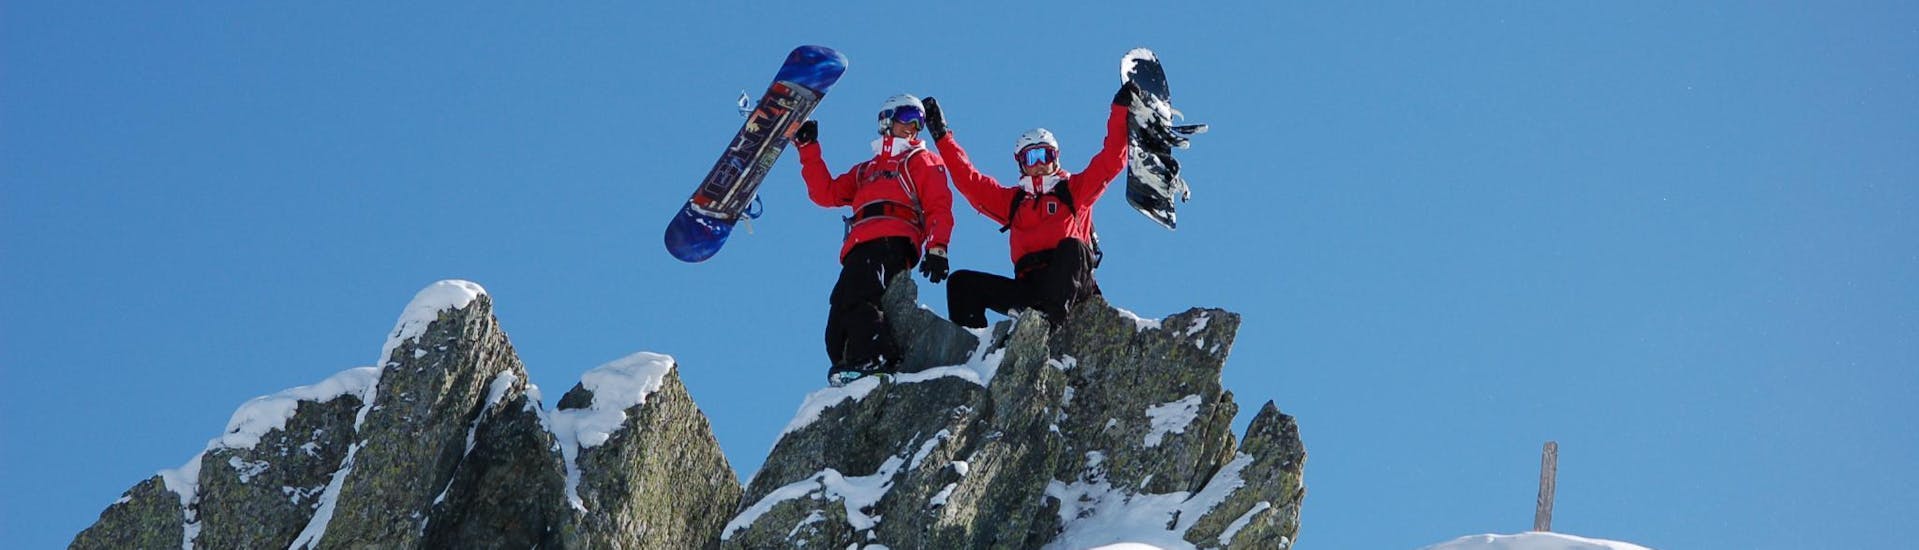 Dans le cadre des Cours de Snowboard pour Enfants et Adultes - Avec Expérience, deux moniteurs de snowboard de l'école de ski Skischule Kitzbühel Rote Teufel ont grimpé sur un rocher et prennent la pose pour une photo avec leurs snowboards.